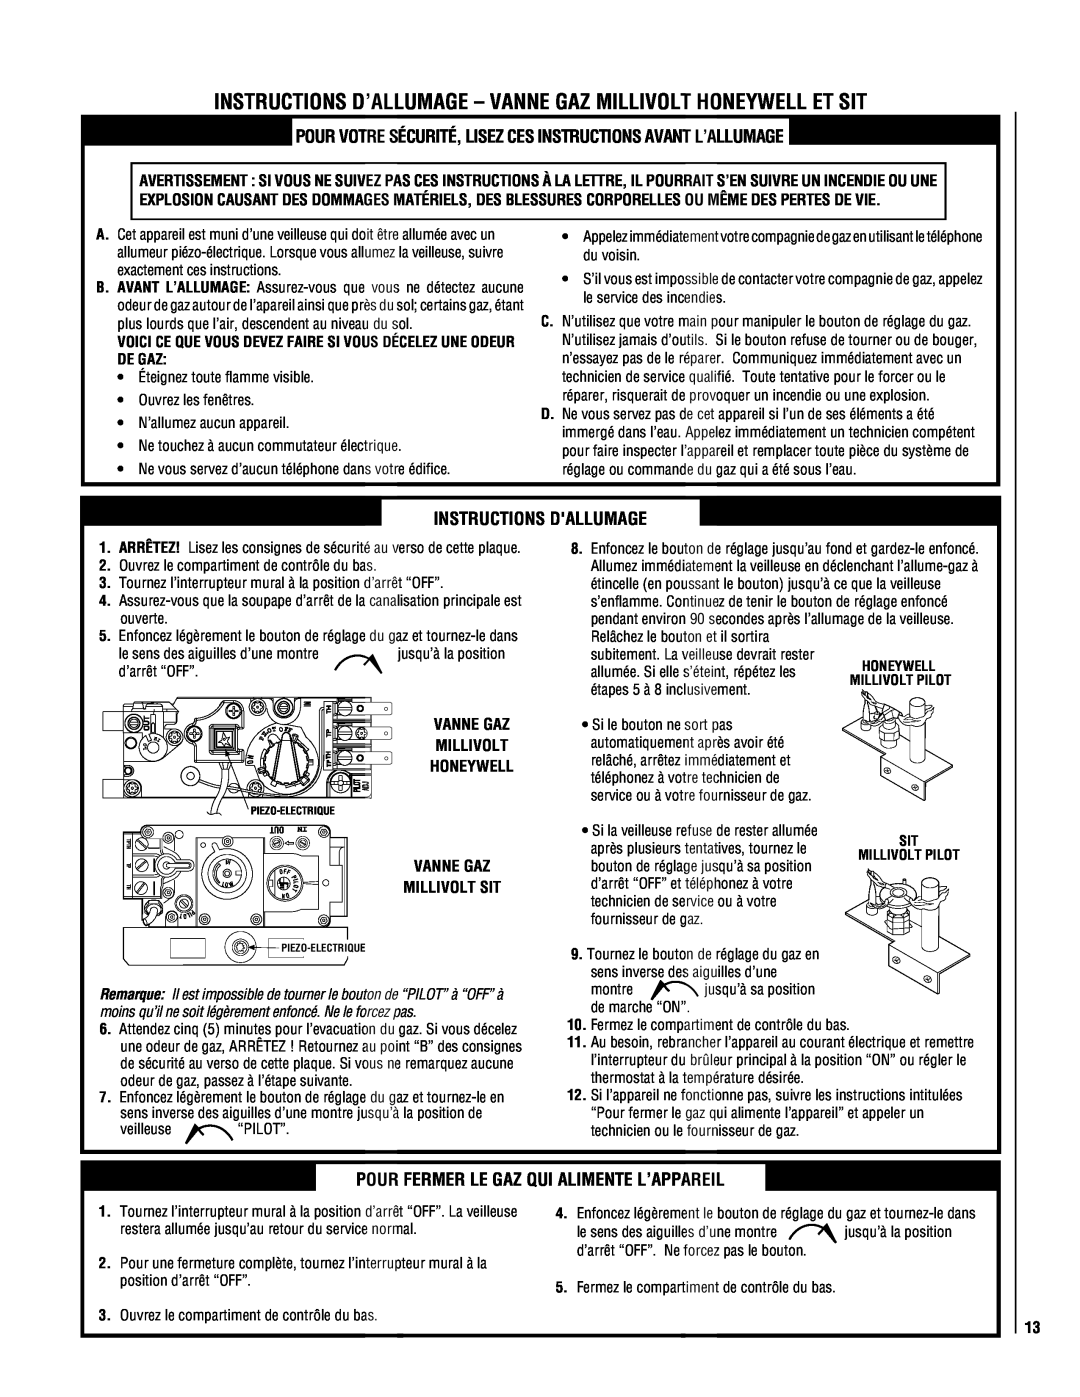 Superior NEC004-TD, NMC004-TD manual Instructions Dallumage, Pour Fermer Le Gaz Qui Alimente L’Appareil 